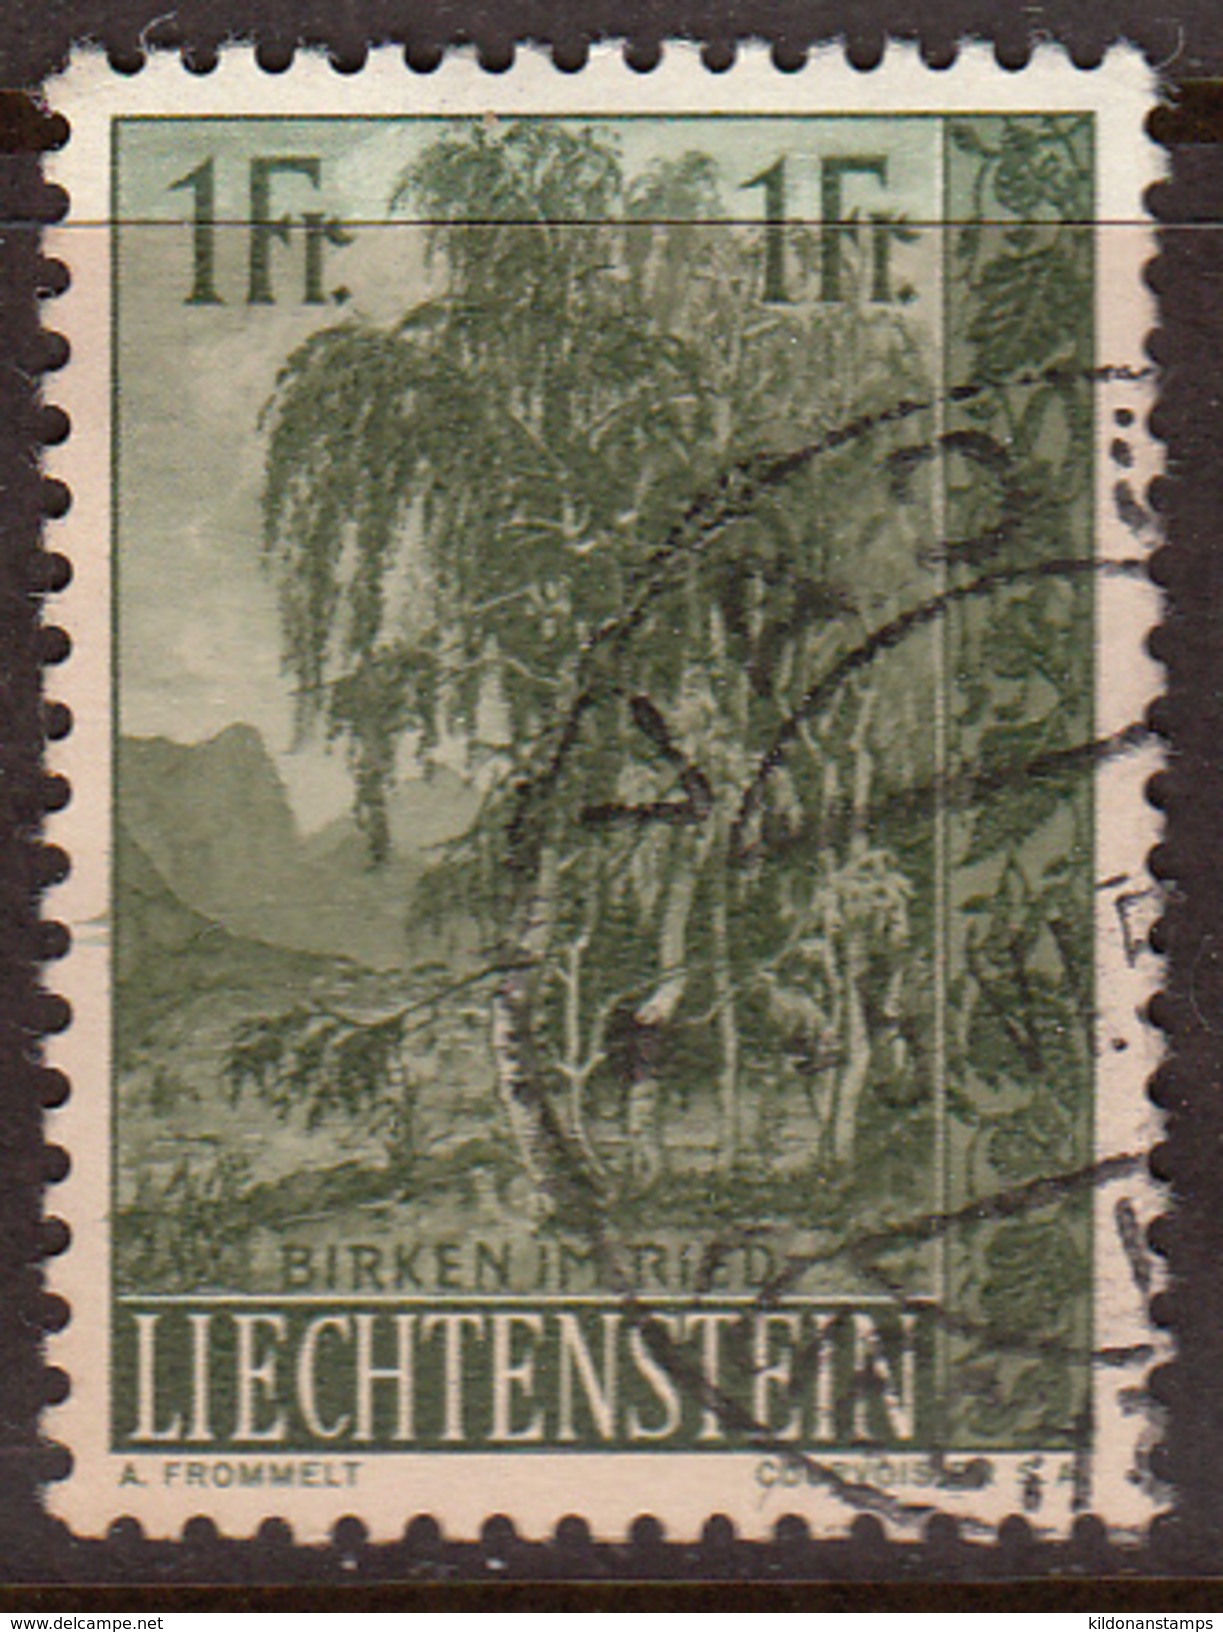 Liechtenstein 1957, Cancelled, Sc# 314 - Usados